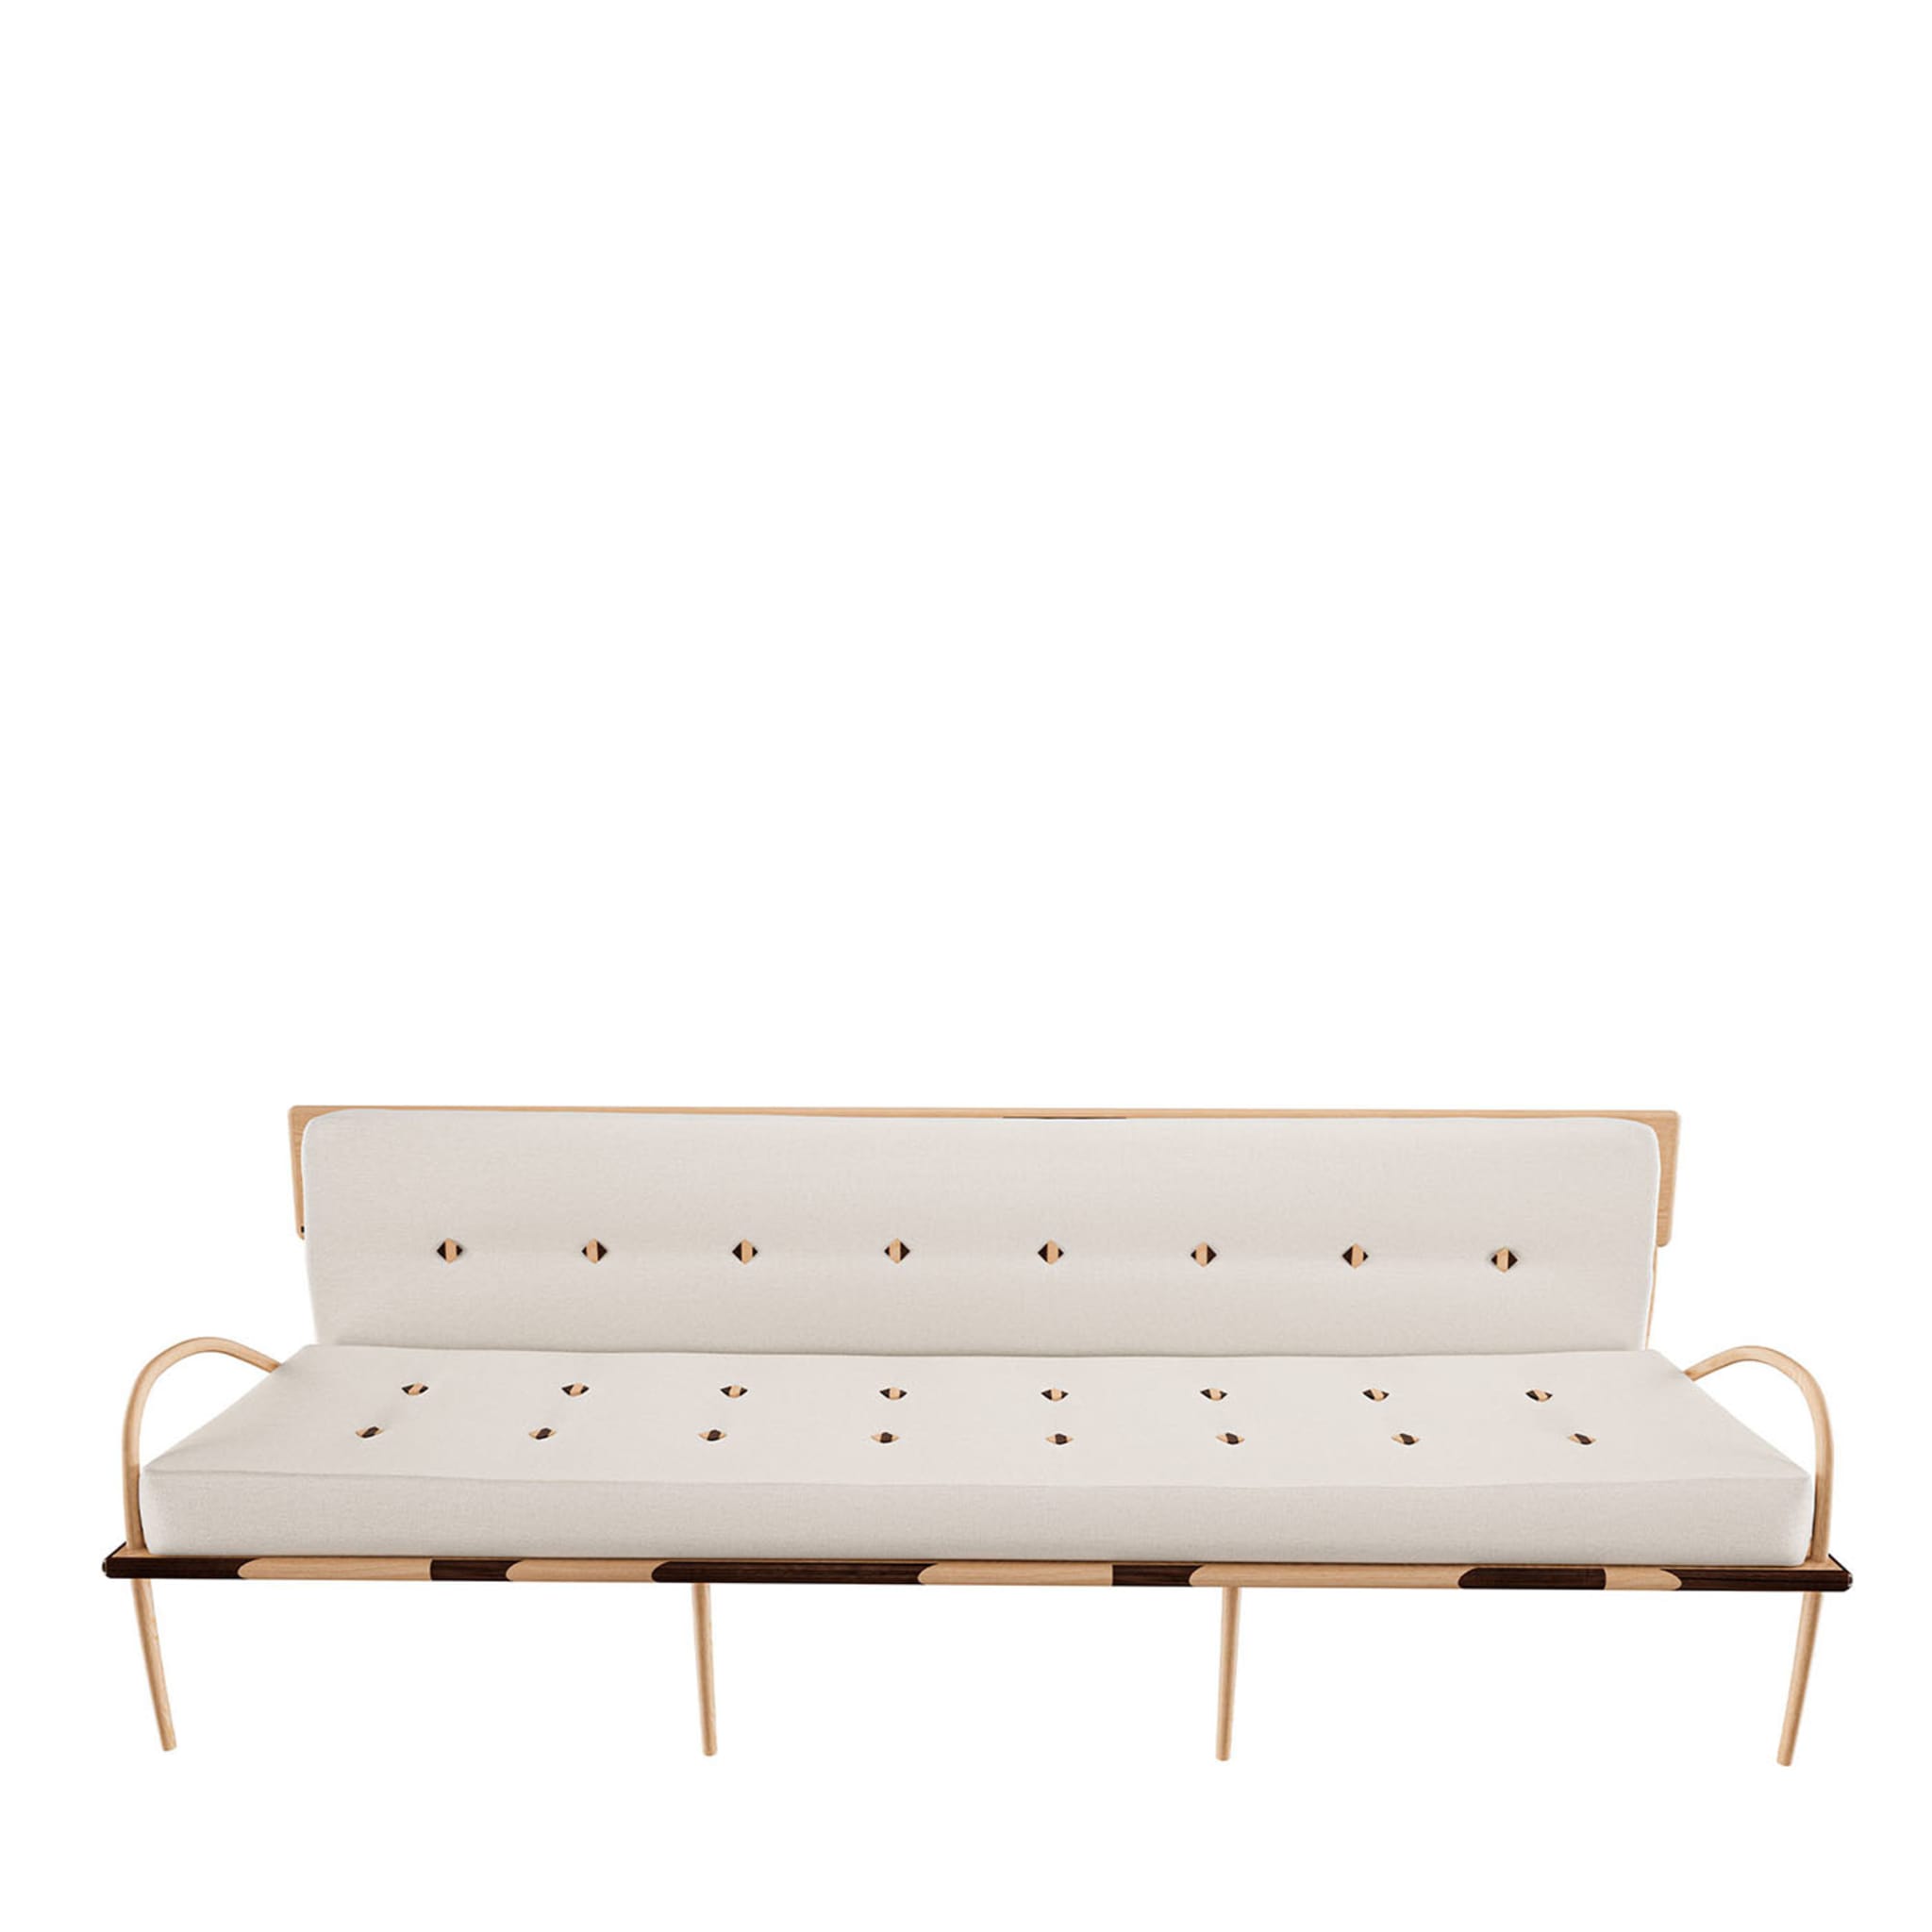 Romanza White Sofa by Studio Marmo - Main view